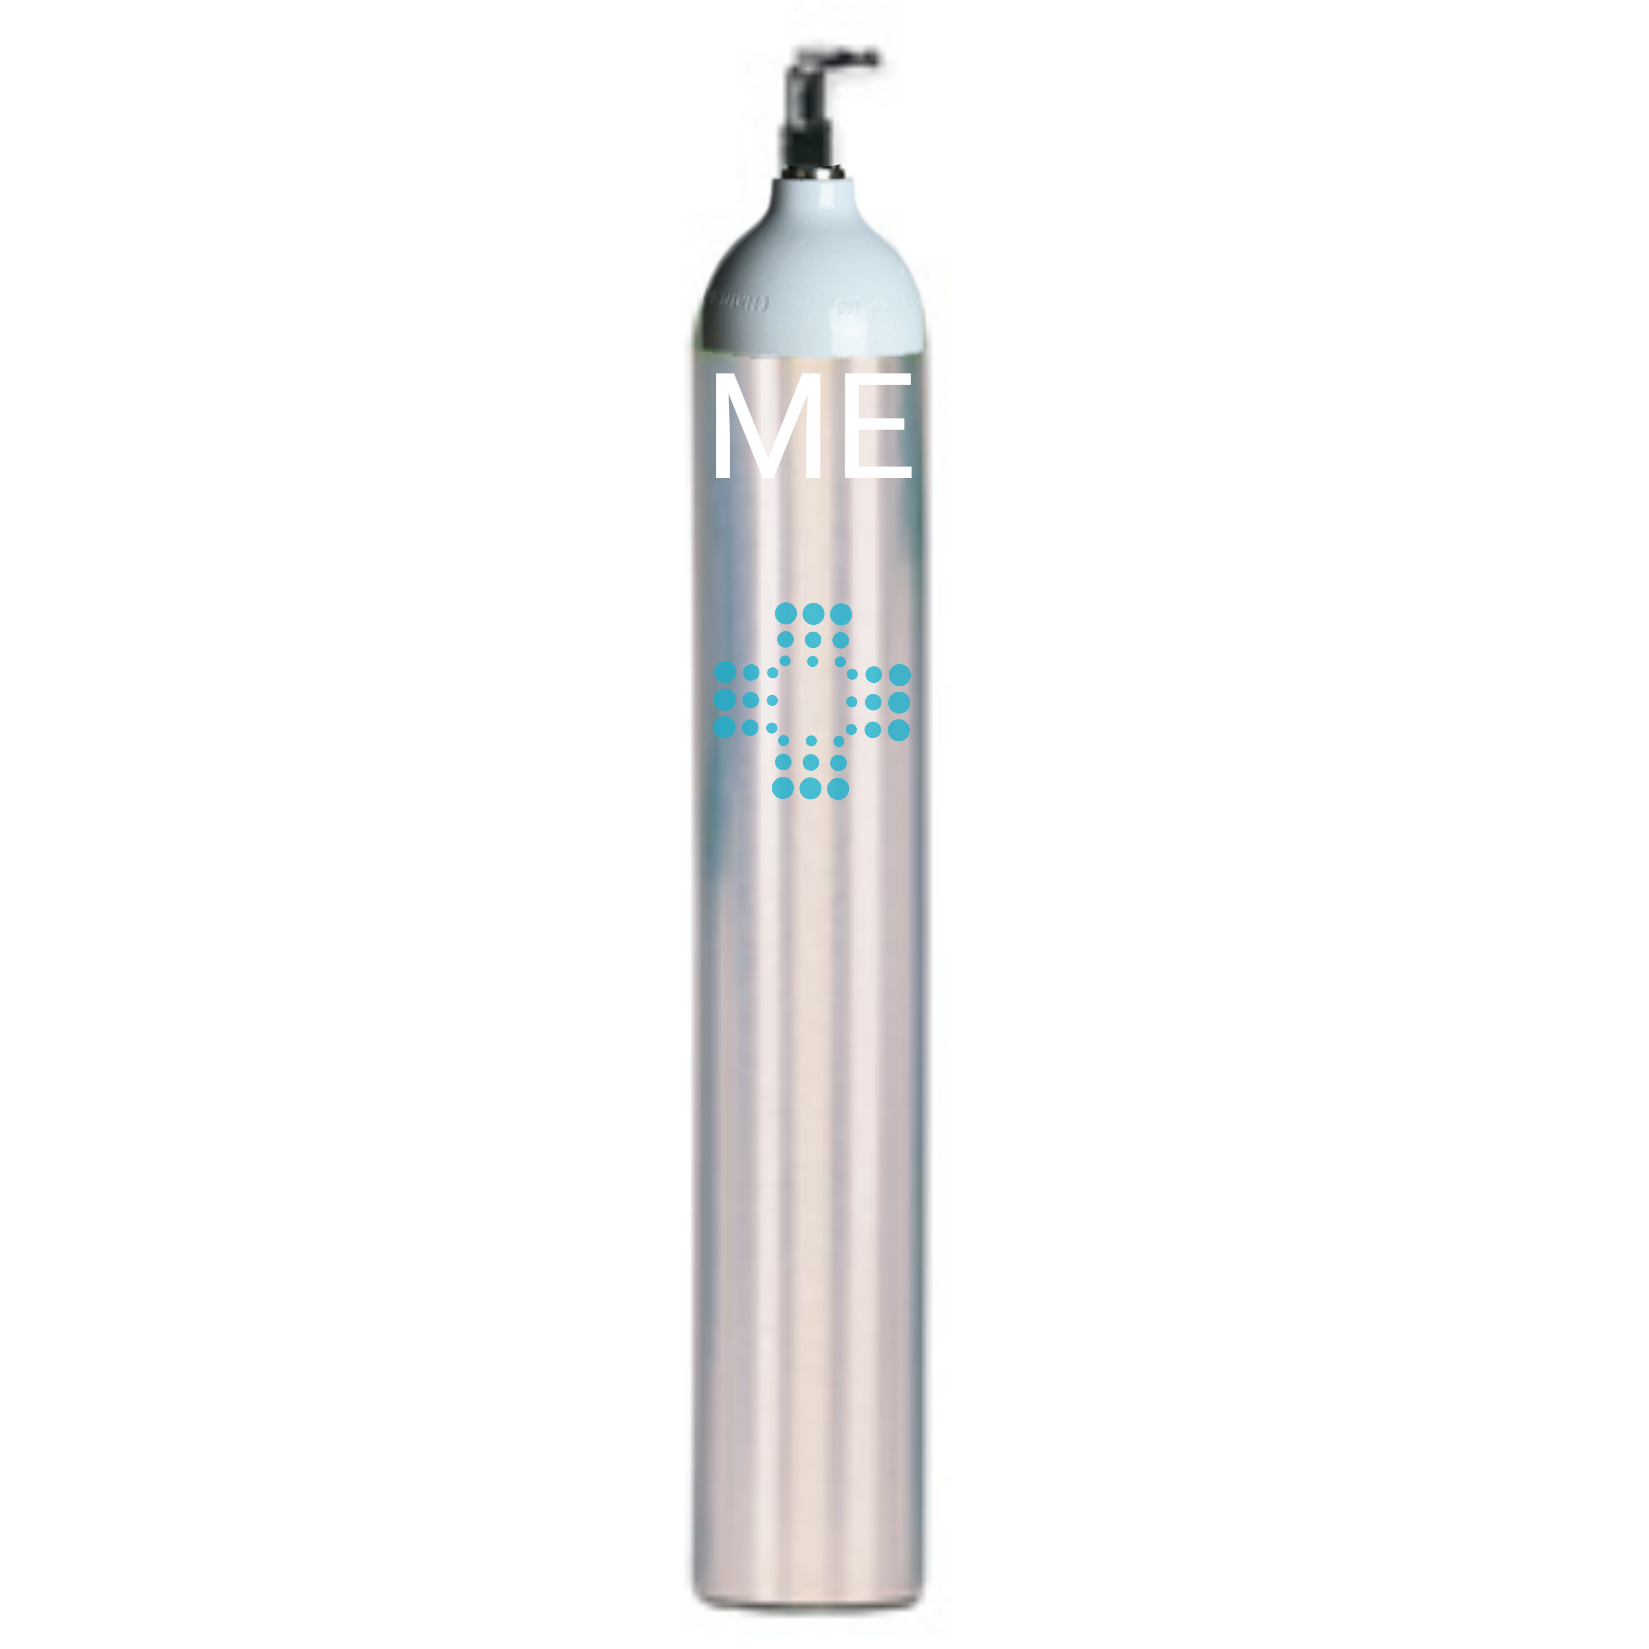 ME oxygen tank cylinder